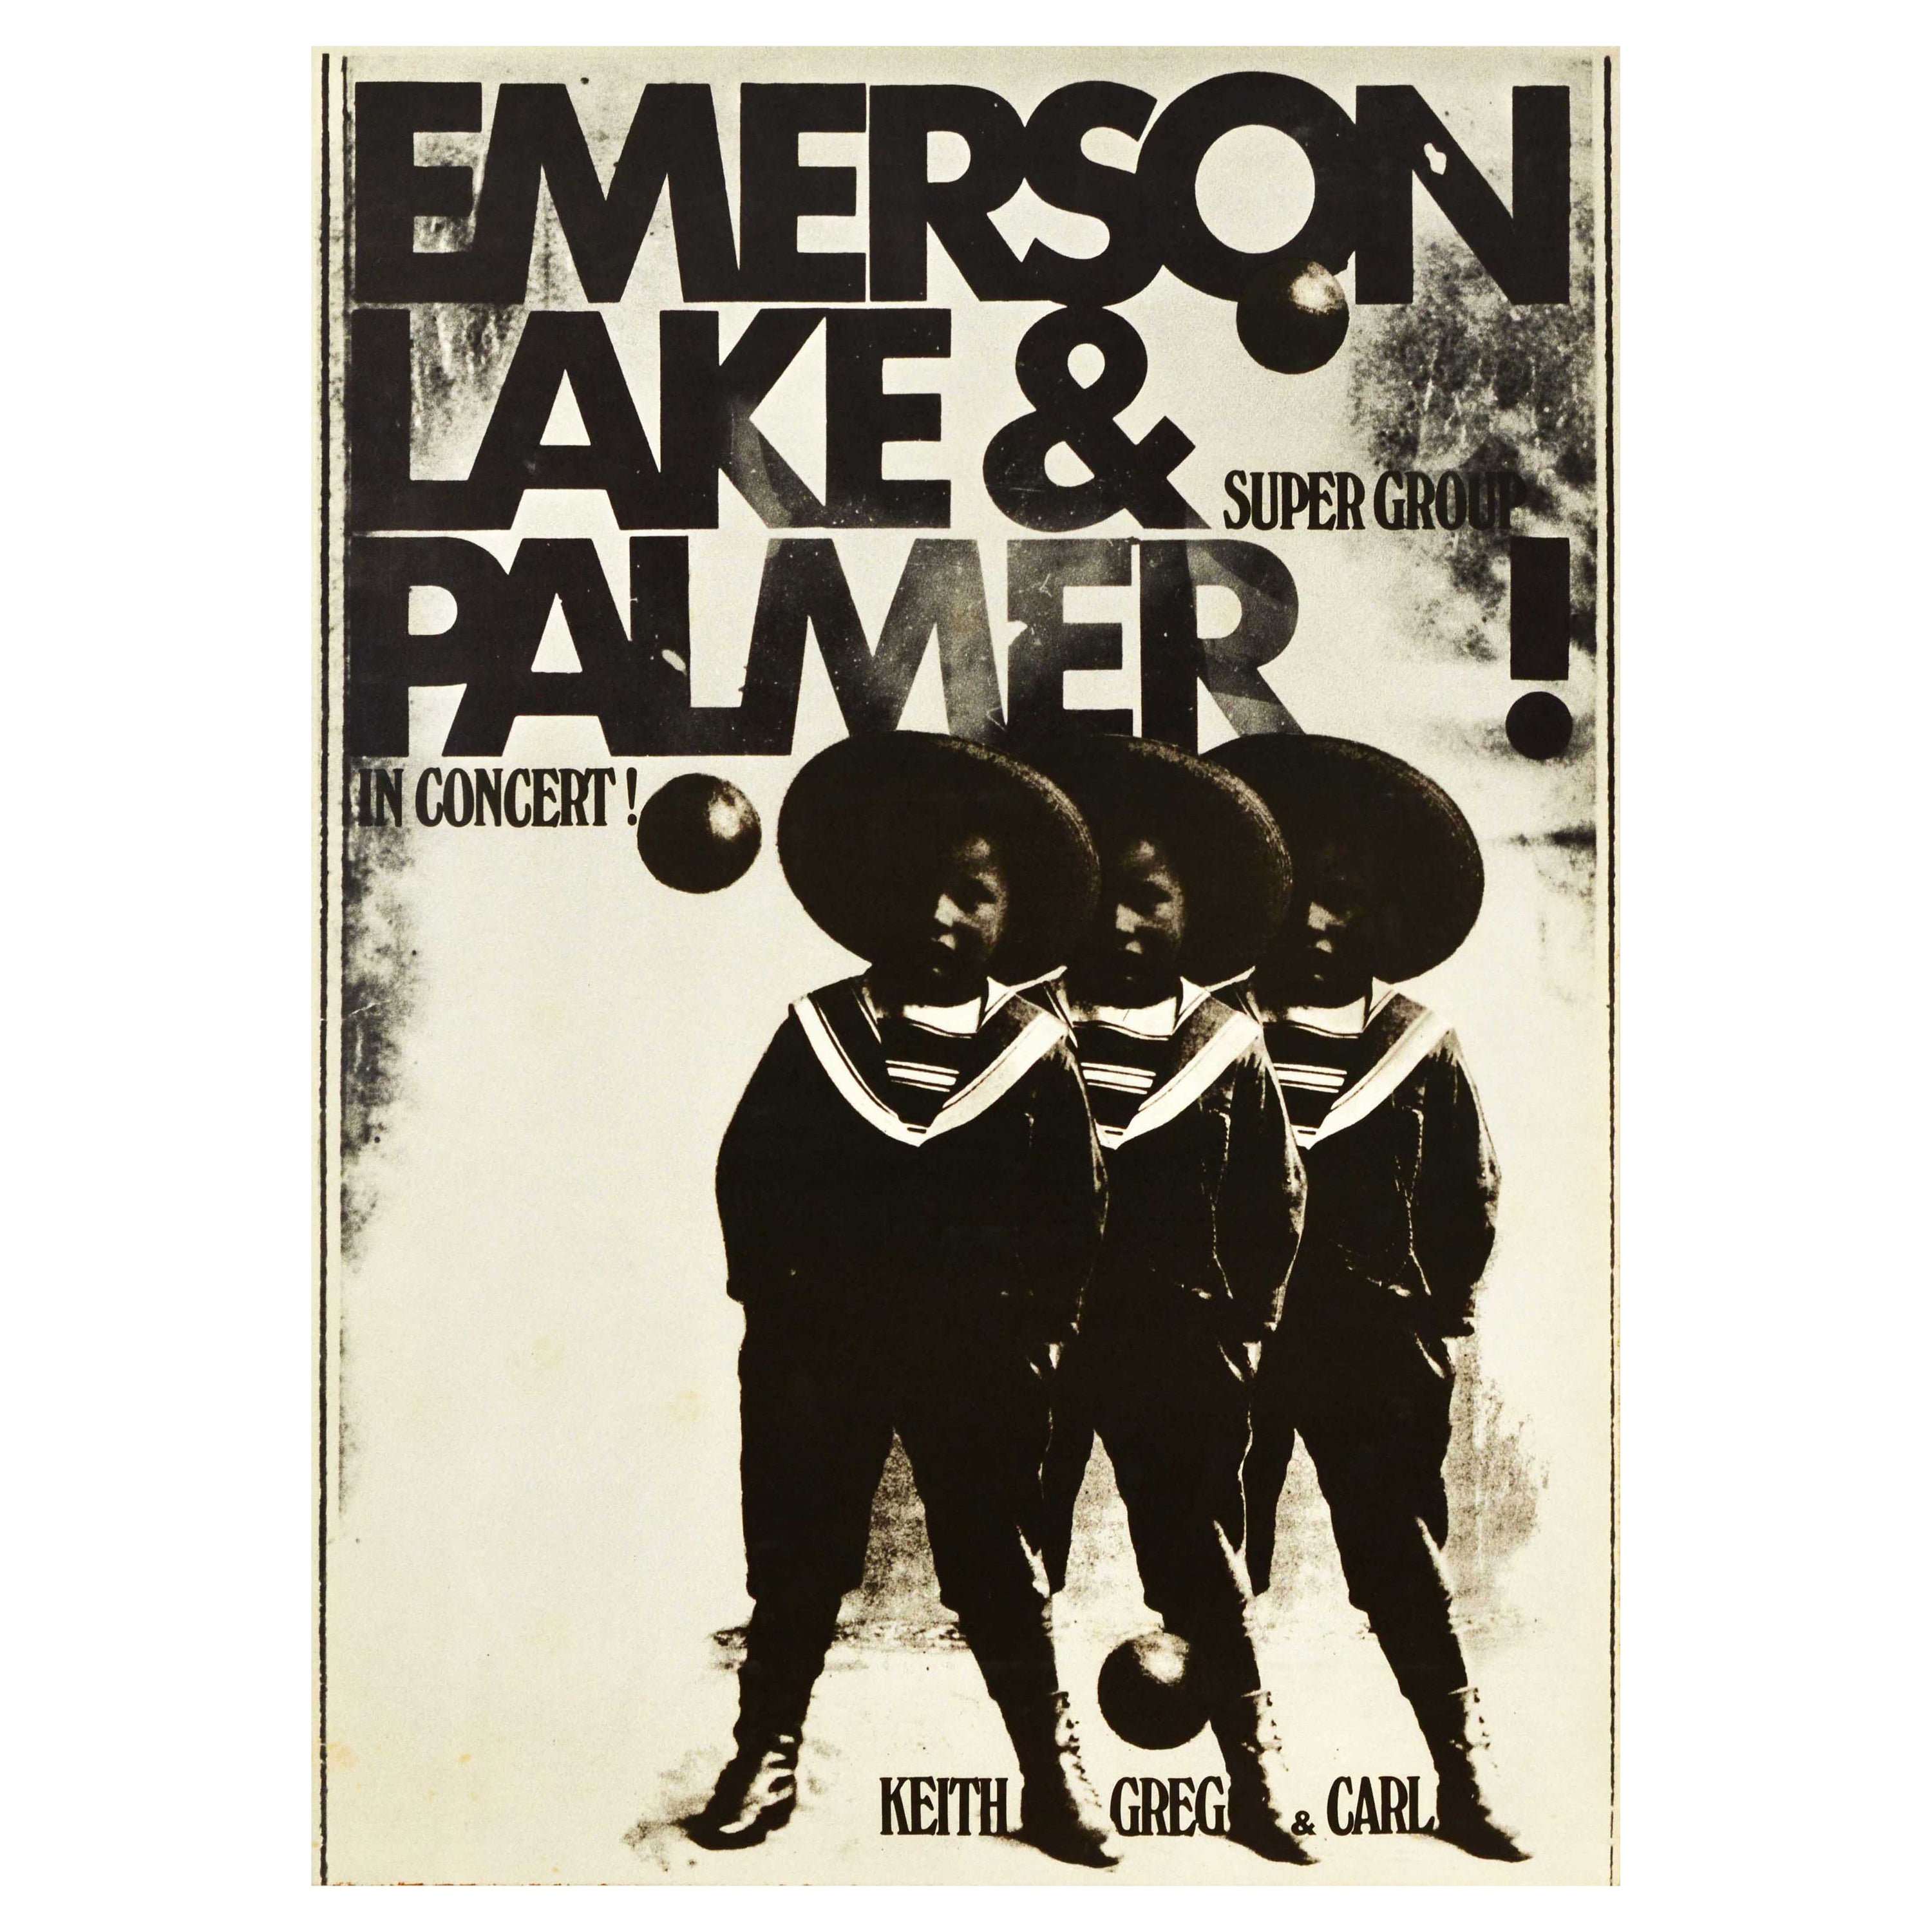 Original Vintage Music Concert Poster Emerson Lake & Palmer Super Group Art Rock For Sale